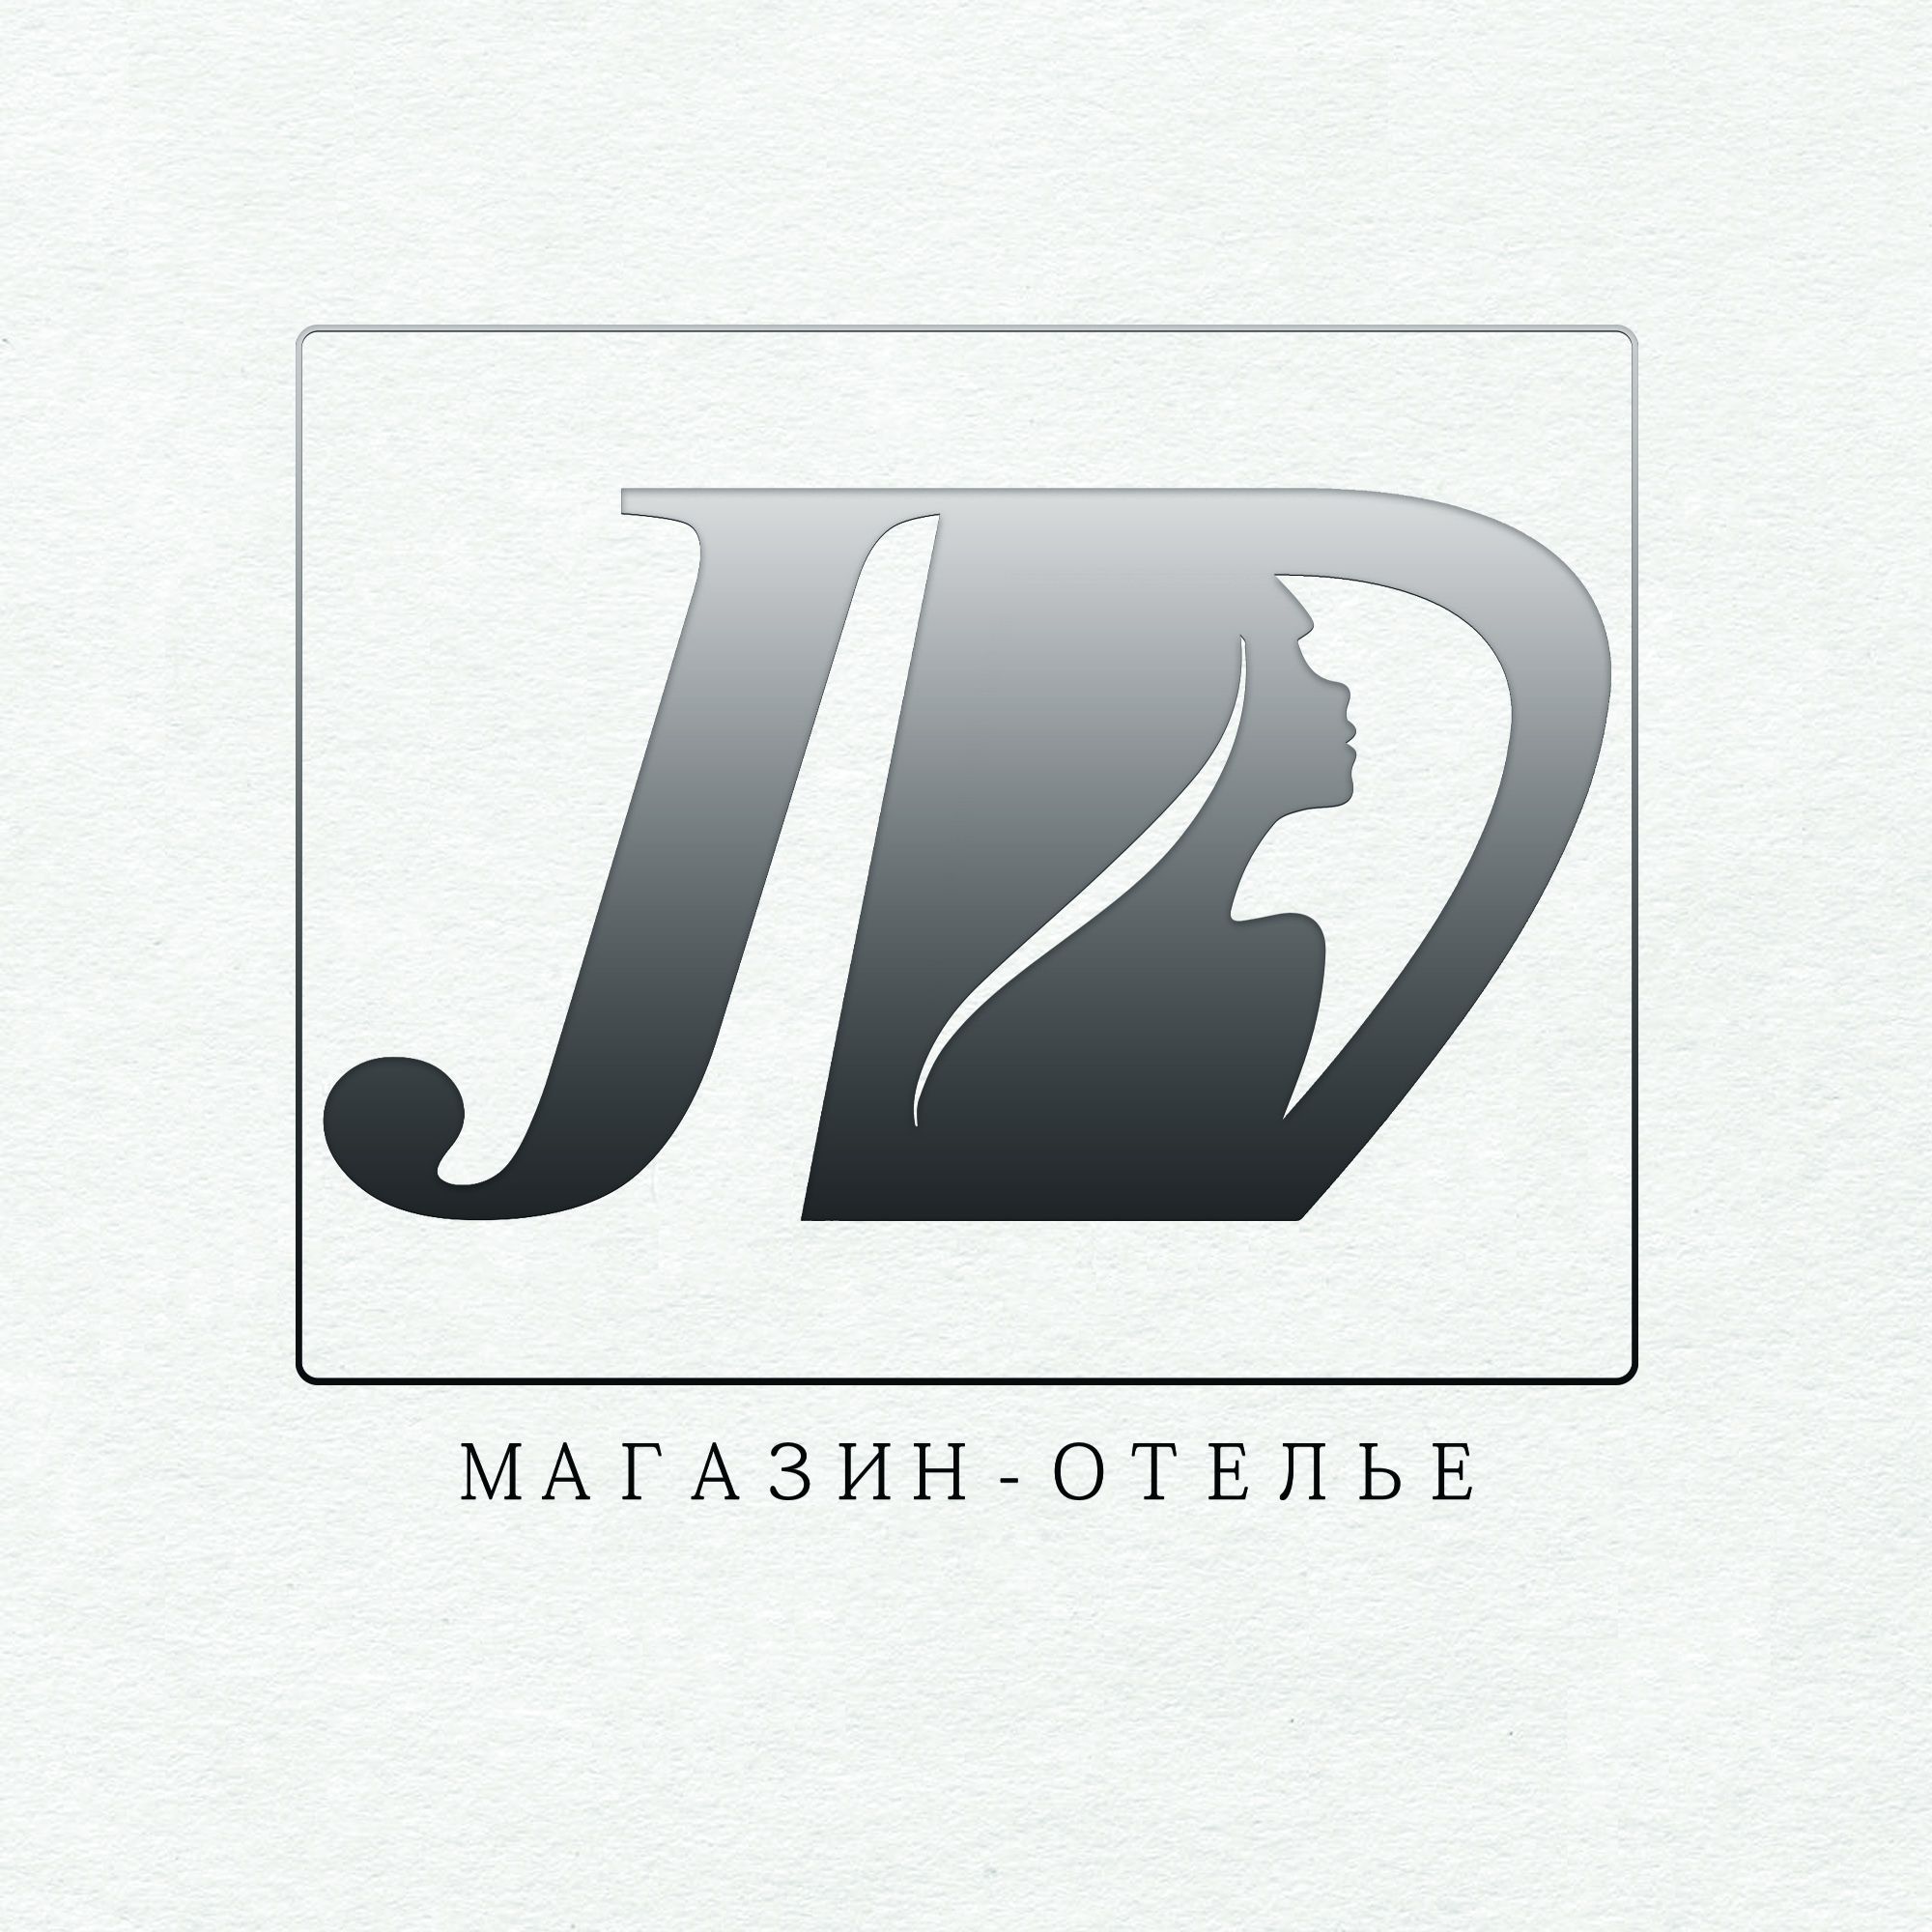 Логотип для  магазина-ателье  - дизайнер lanastark